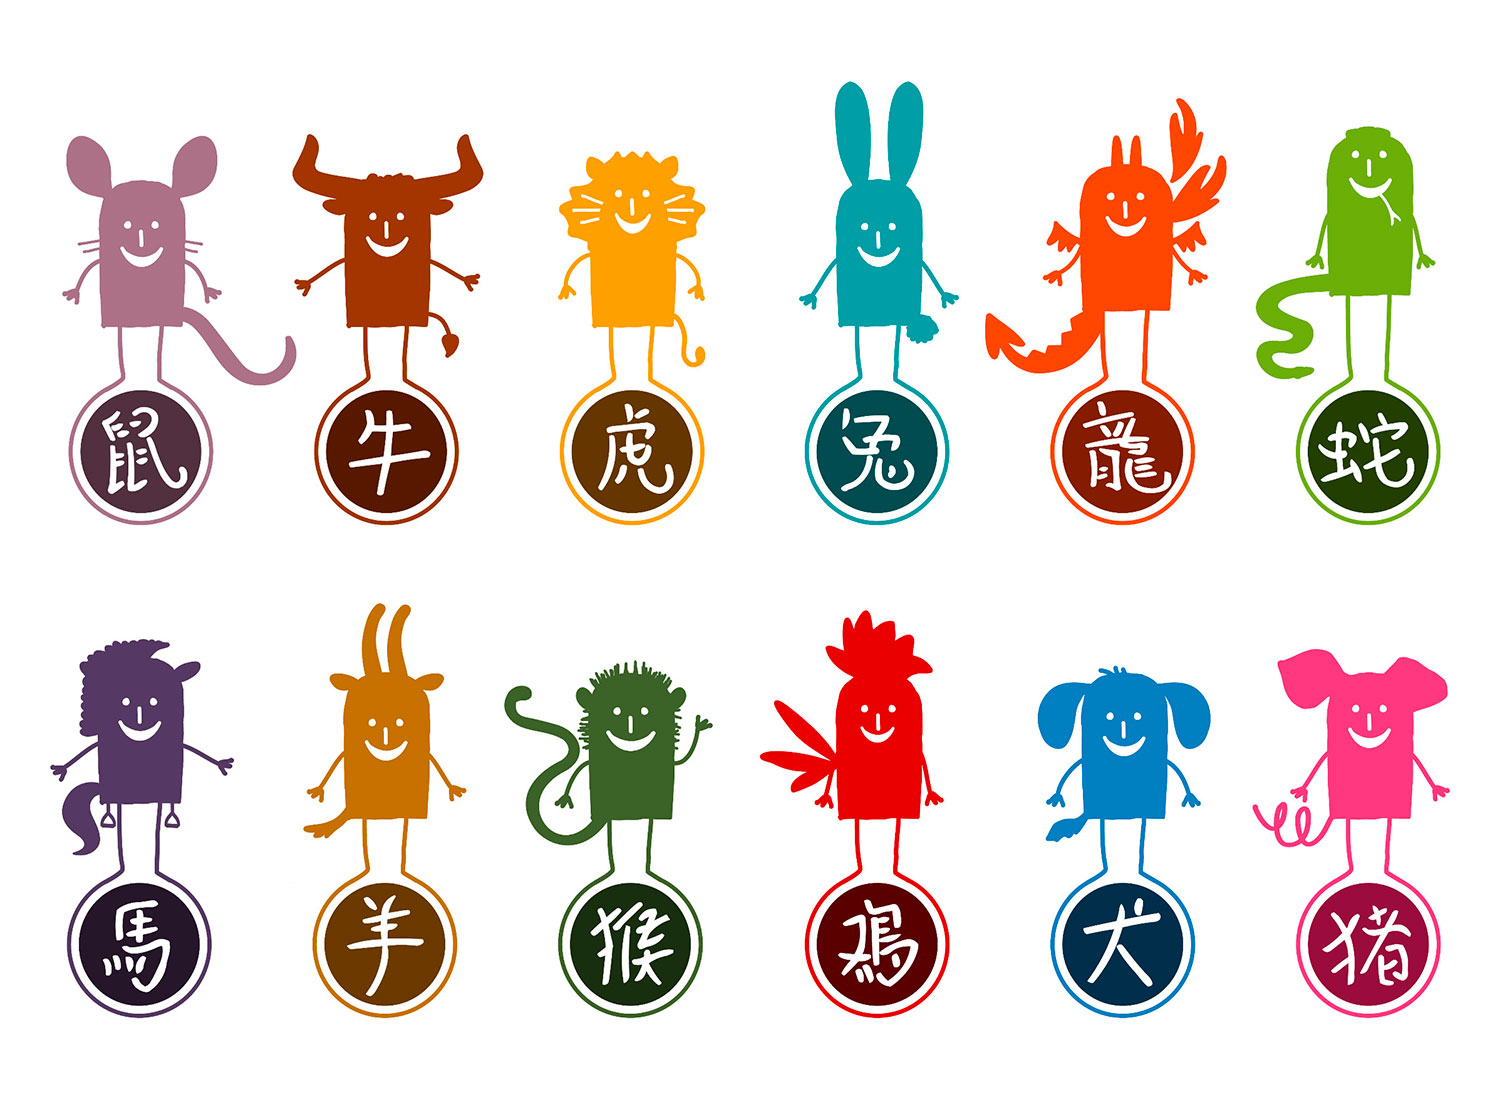 Doce imágenes del zodiaco chino, diferentes al horoscopo occidental. Foto: 123RF.